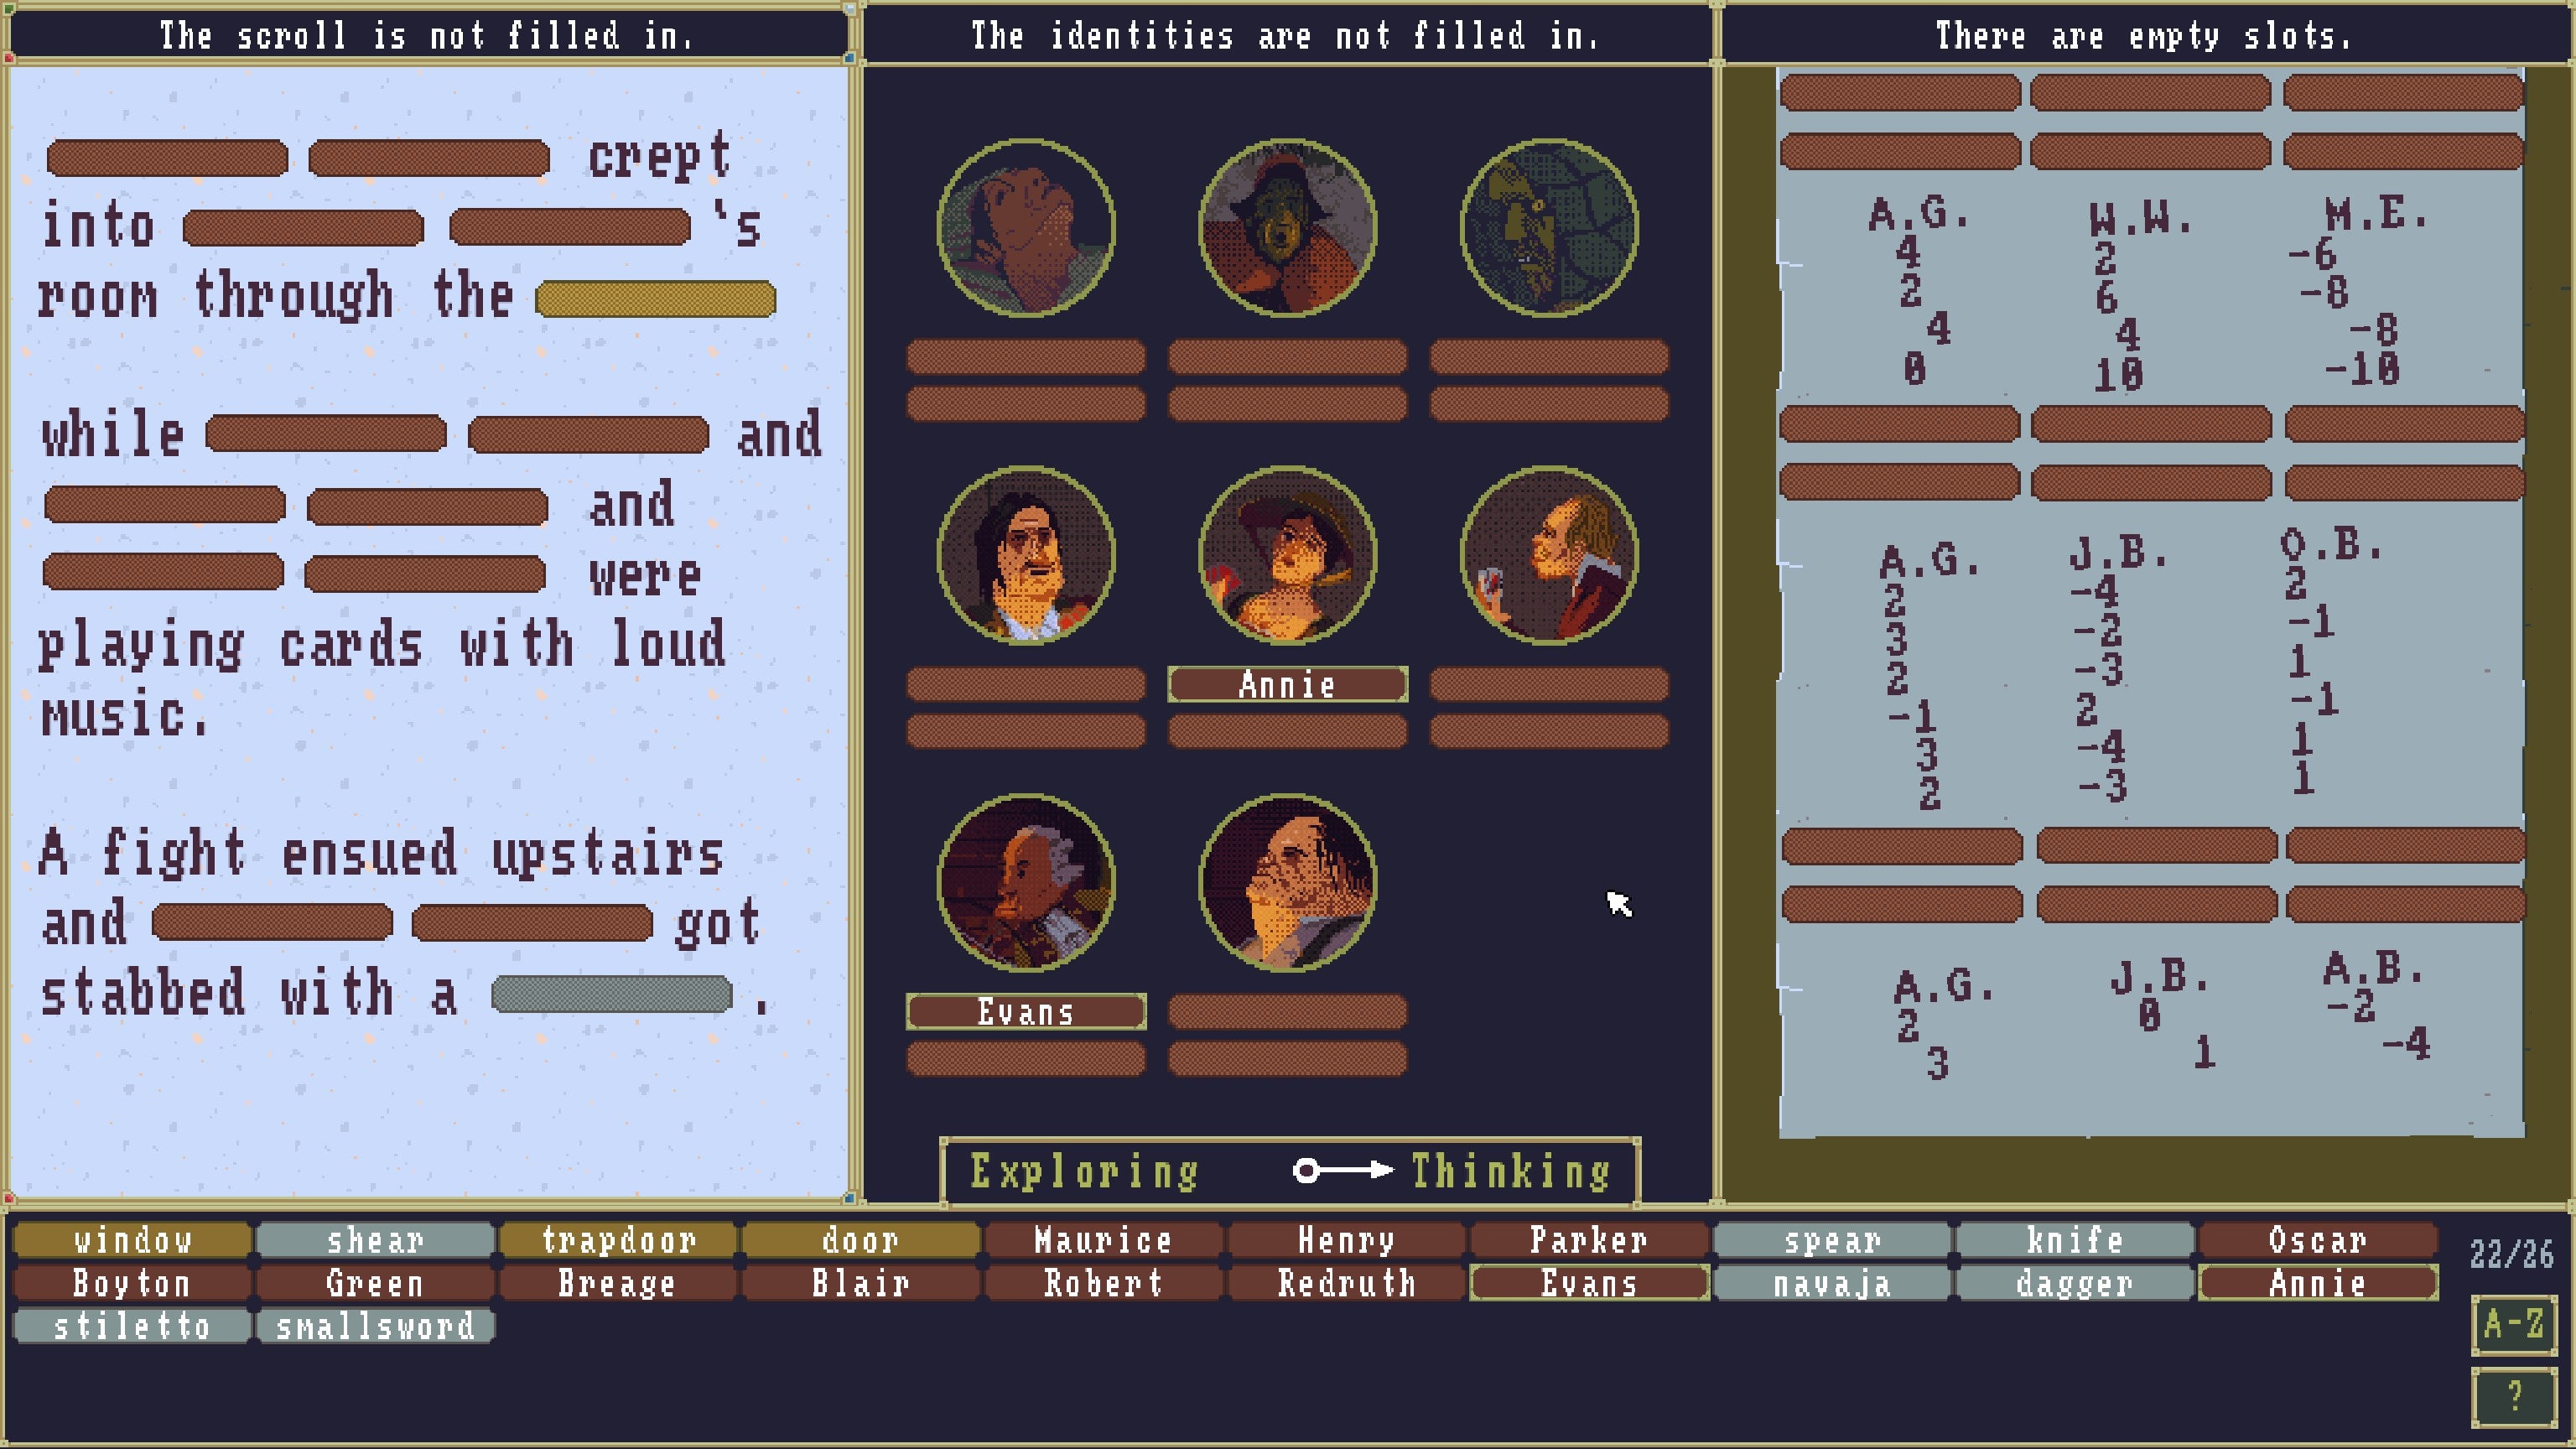 La pantalla está dividida en tres segmentos, con texto, retratos de personajes y una hoja de juego de cartas que el jugador debe completar en El caso del ídolo dorado.